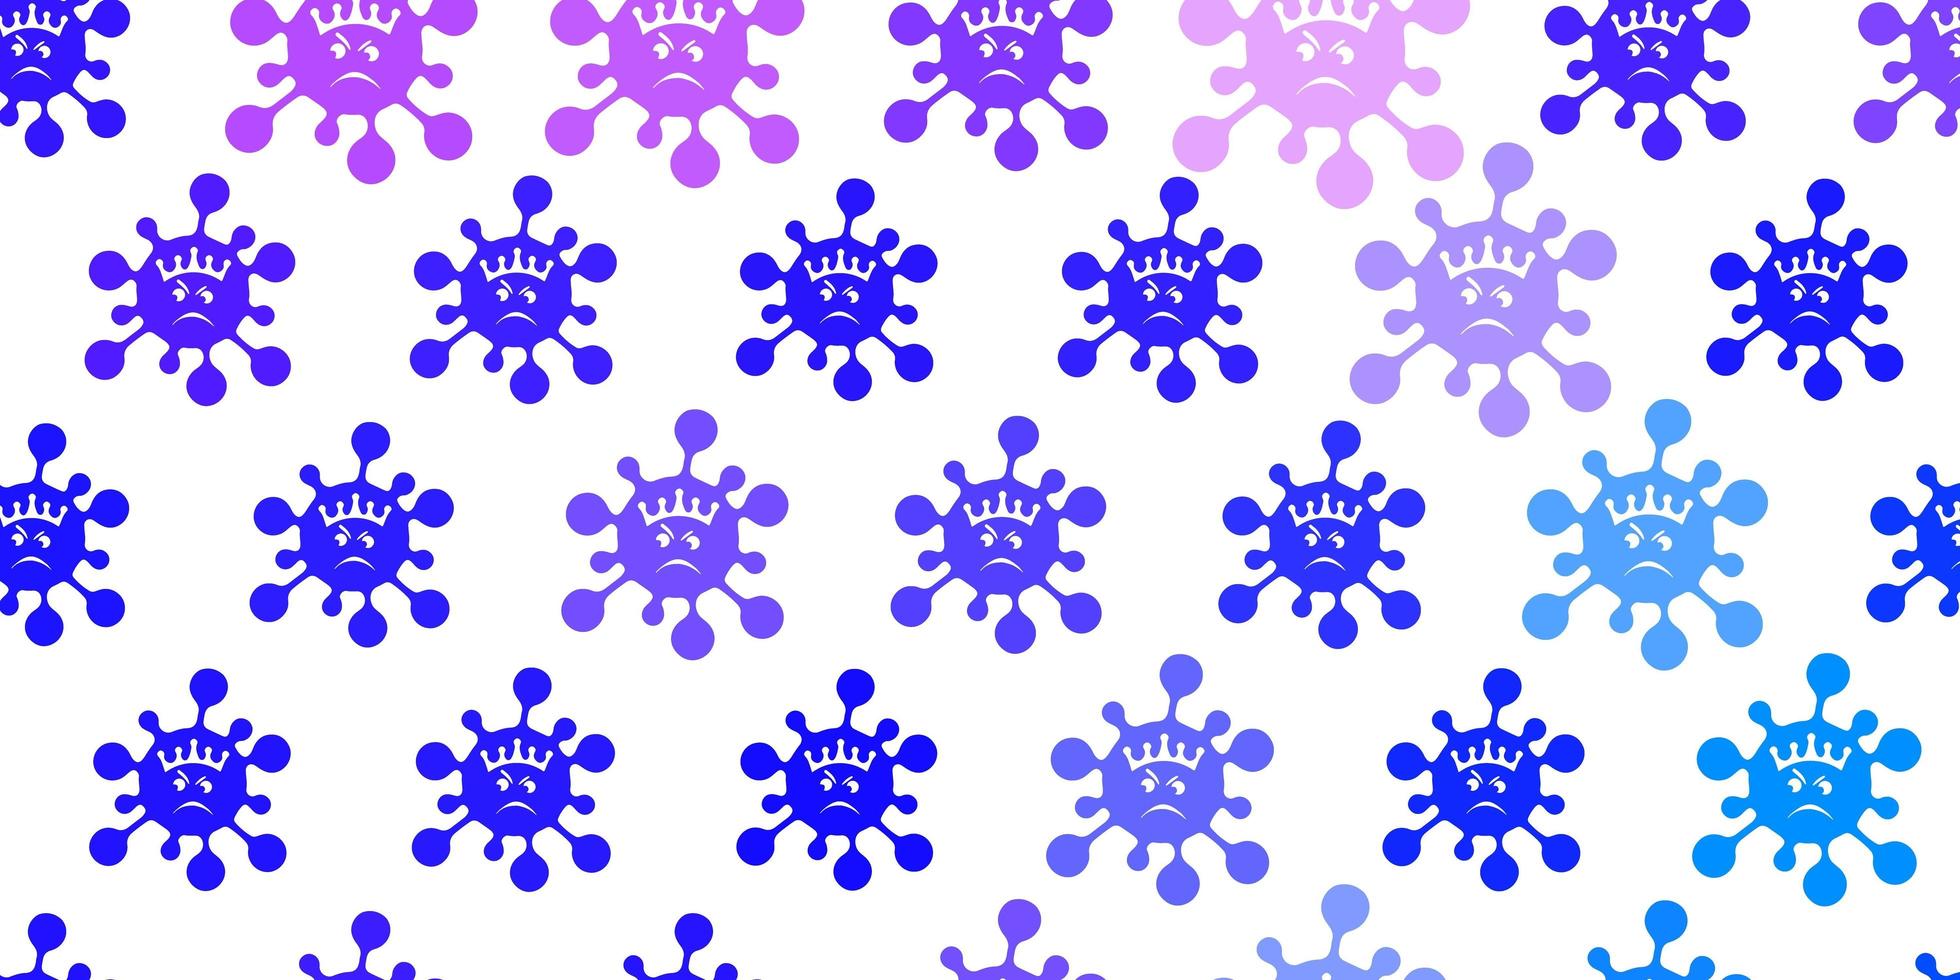 Light Purple vector pattern with coronavirus elements